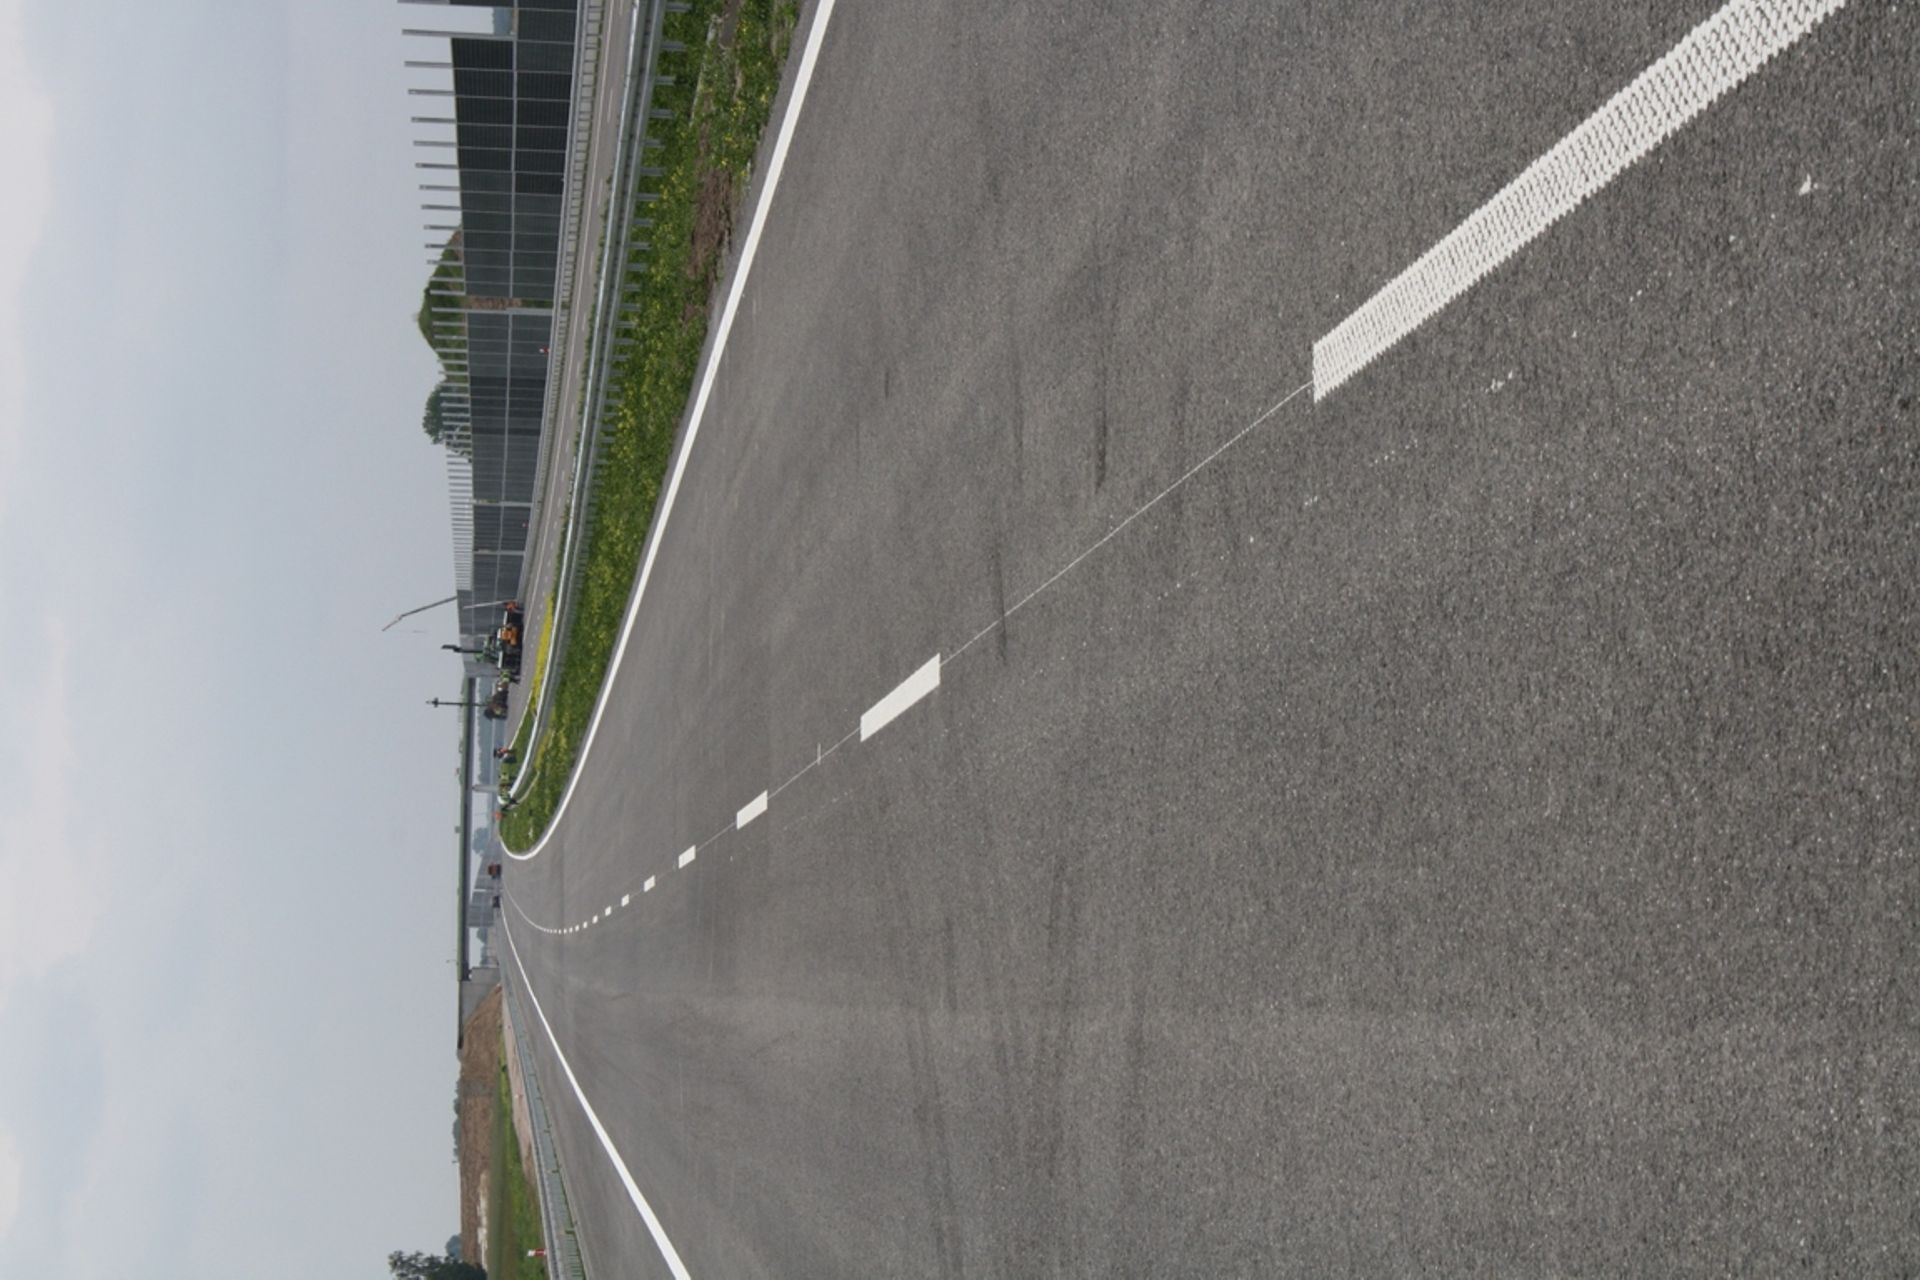  BOGL a KRYSL: odcinek C autostrady A2 przejezdny na EURO 2012